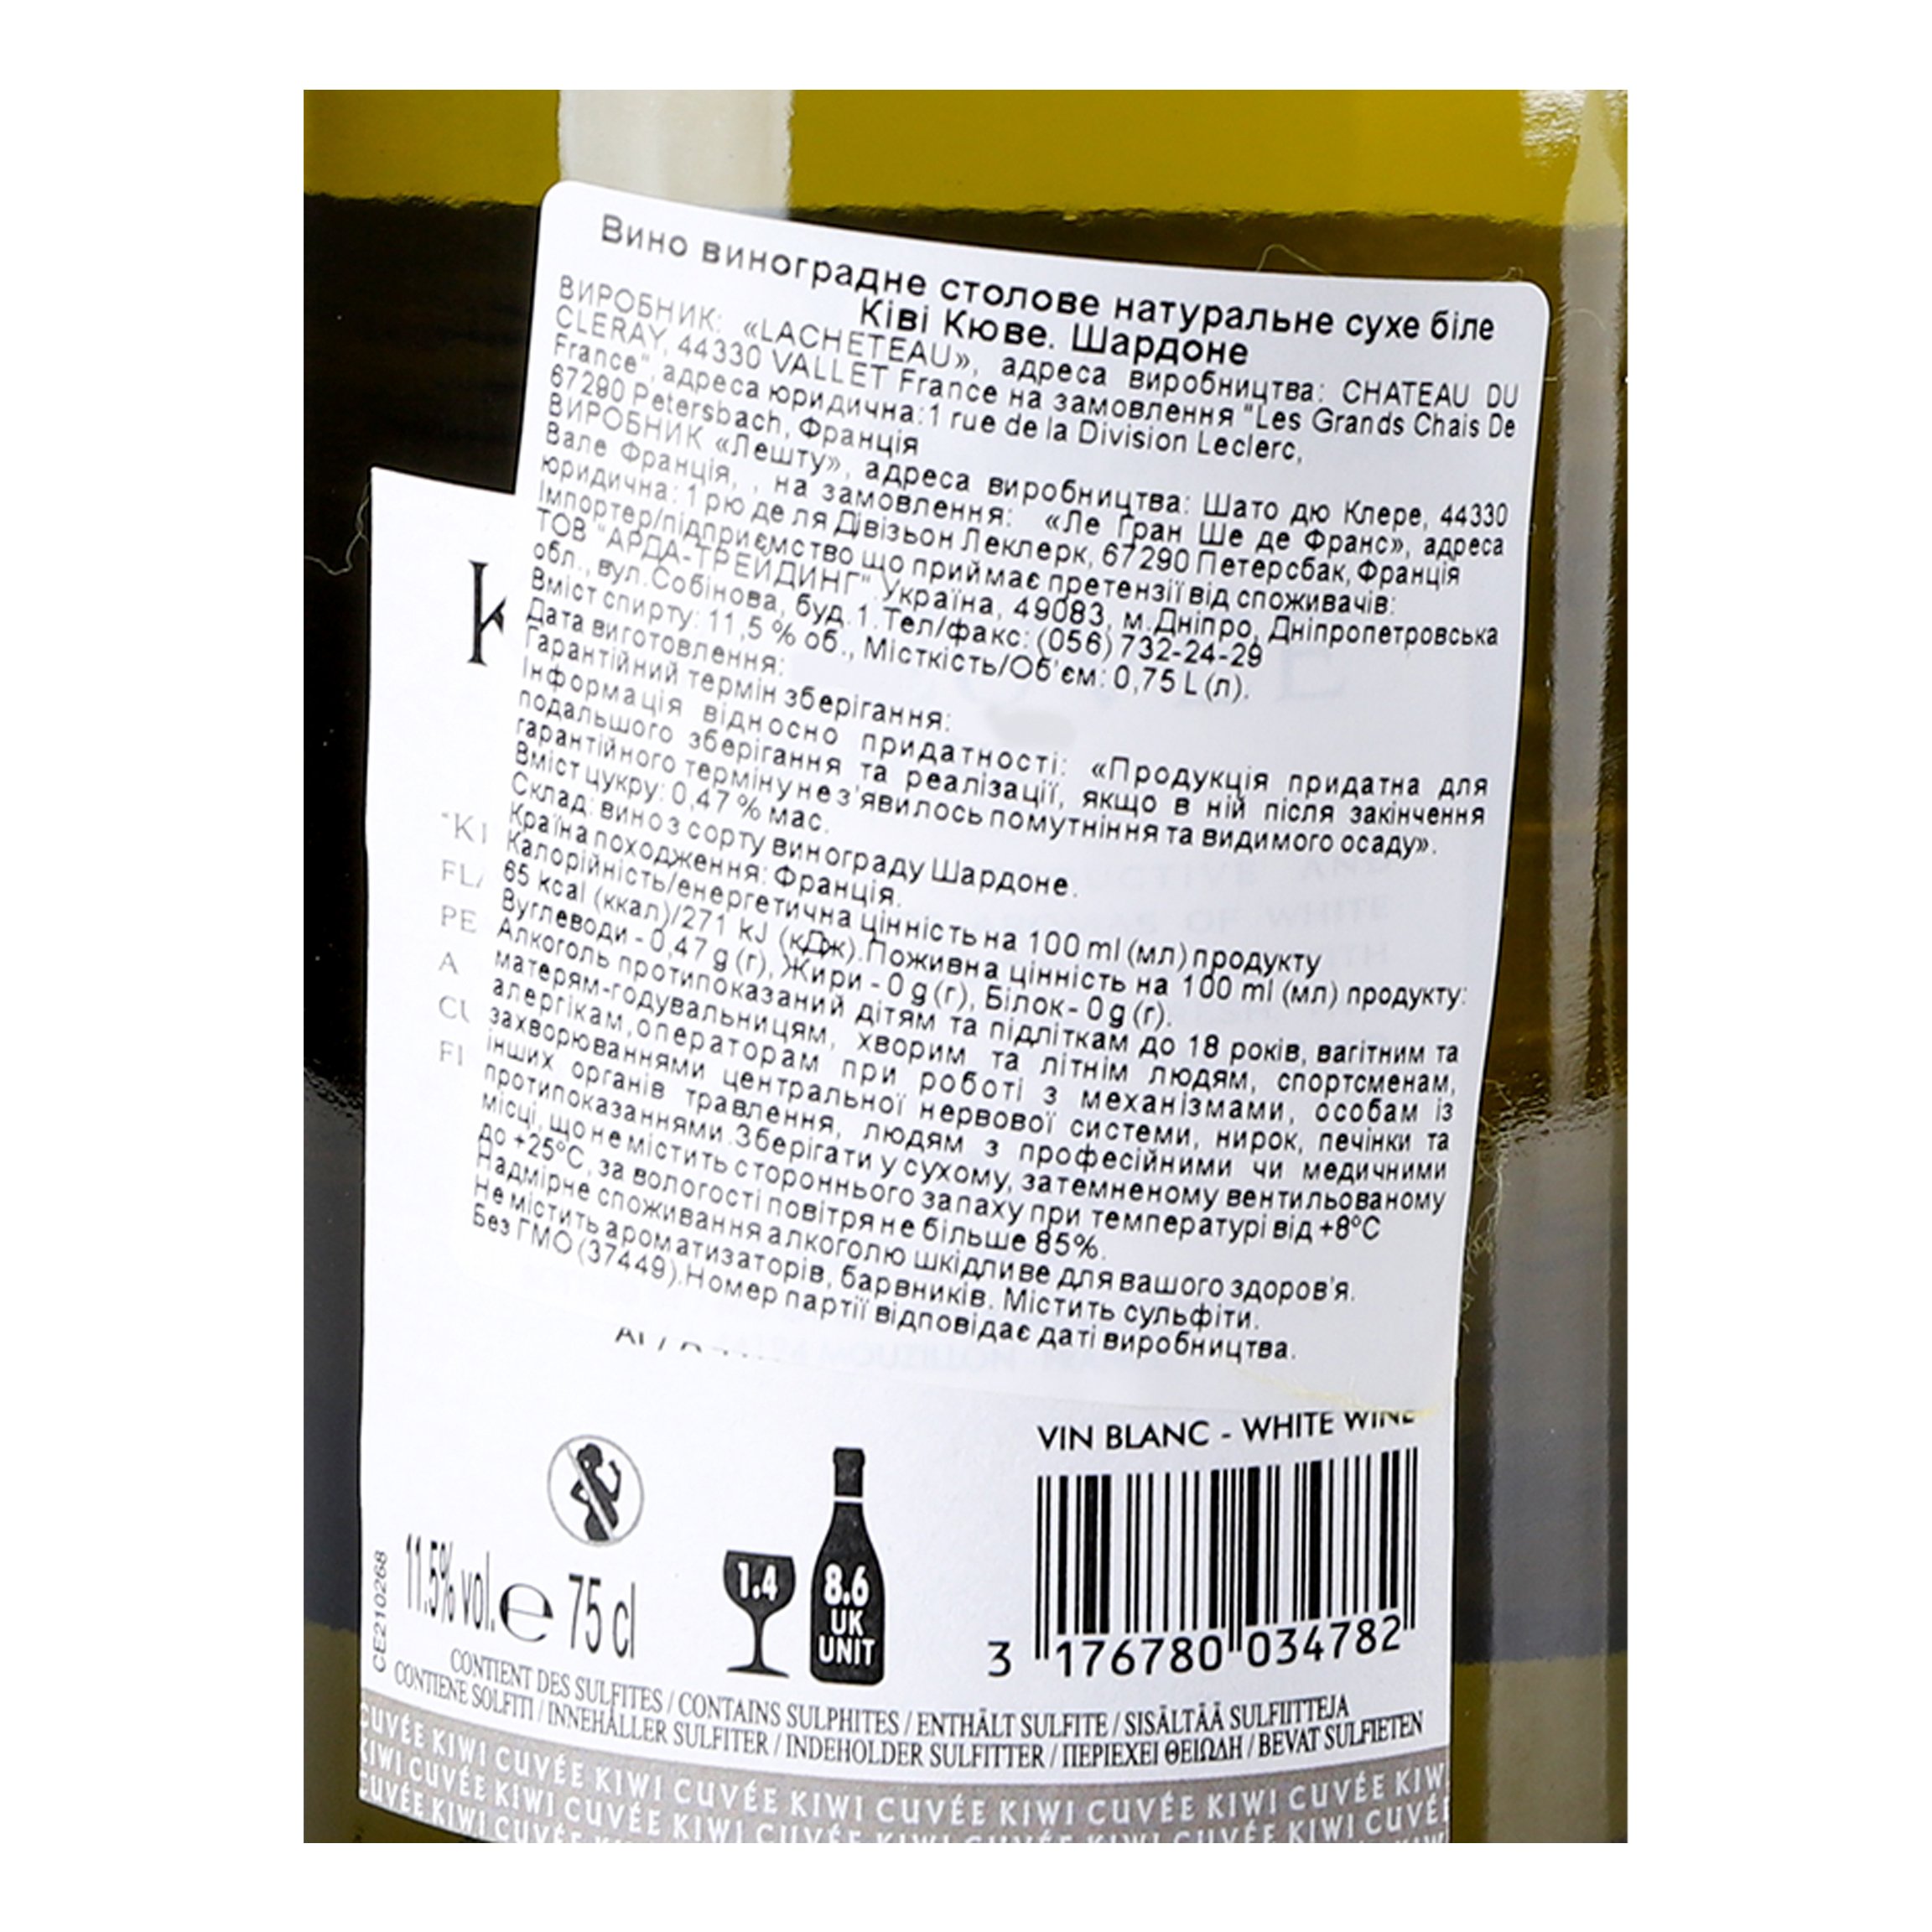 Вино Kiwi Cuvee Bin 68 Chardonnay, белое, сухое, 0,75 л - фото 5